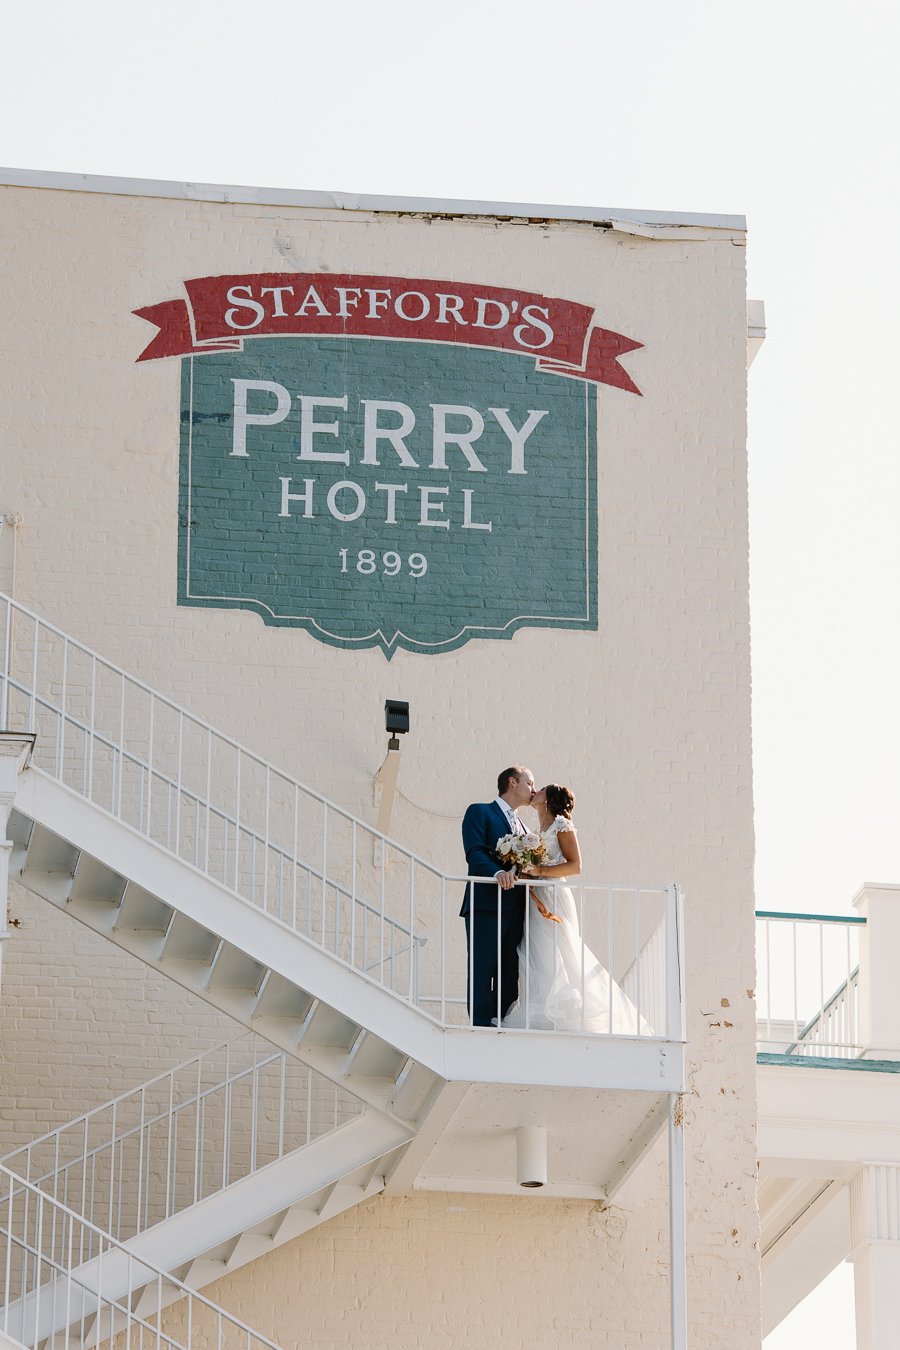 staffords-perry-hotel-wedding-petoskey-michigan-256.jpg